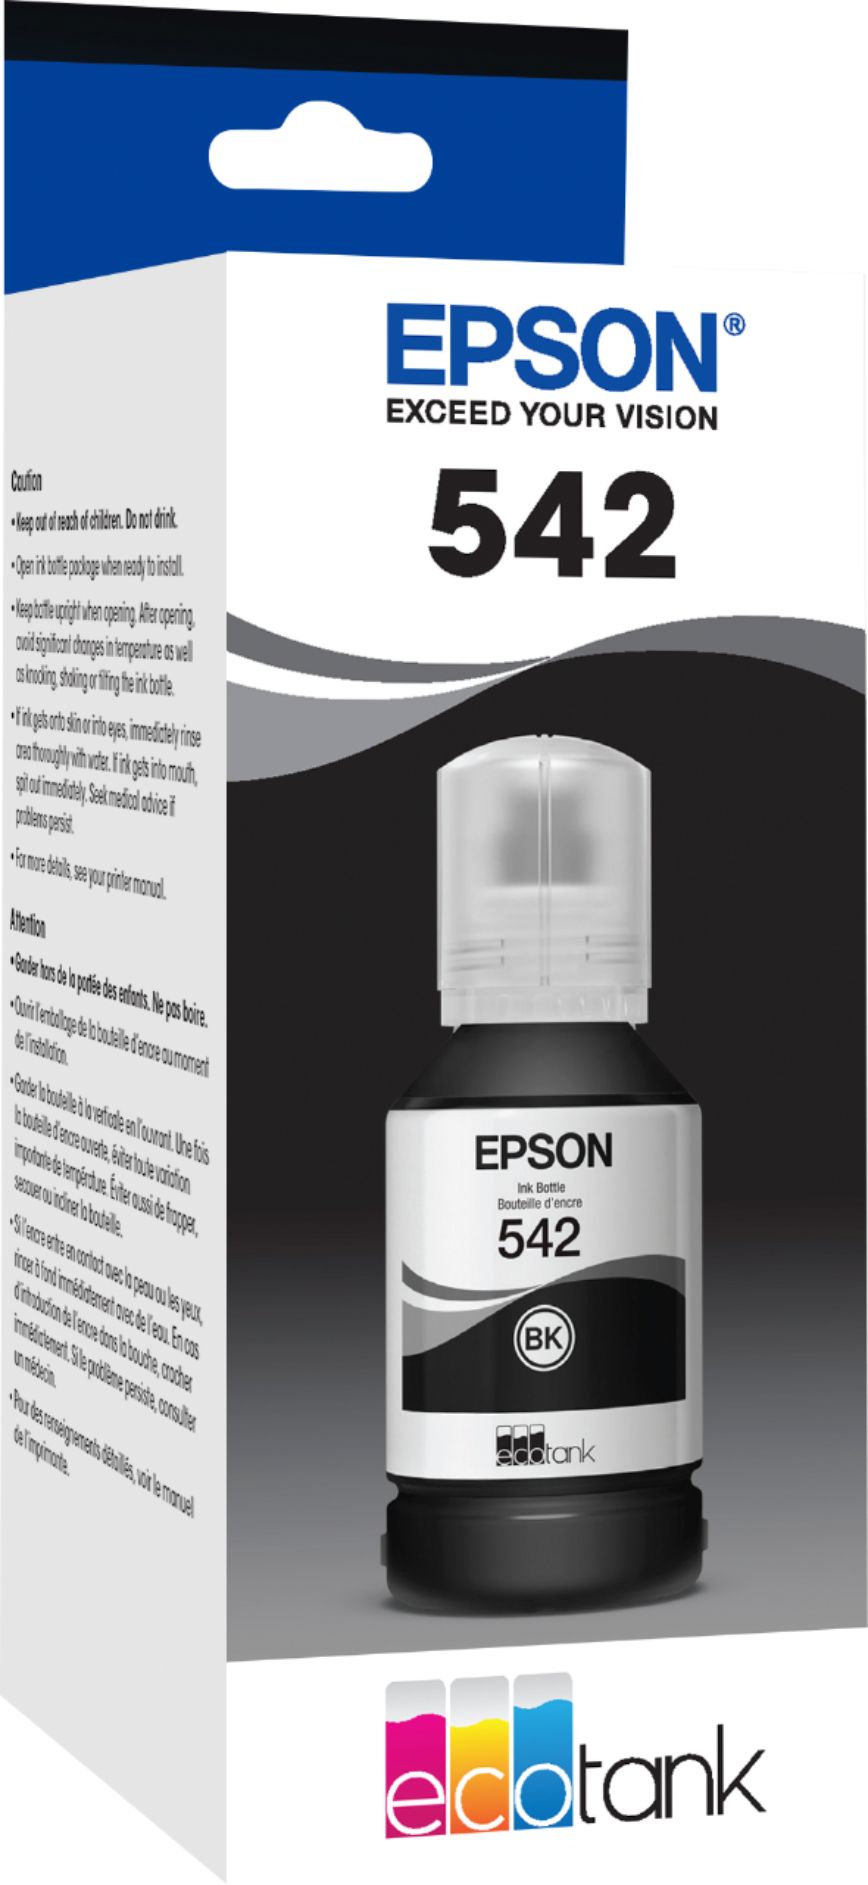 Epson 542 XL High-Yield Ink Cartridge Black T542 BLK INK BOTTLE